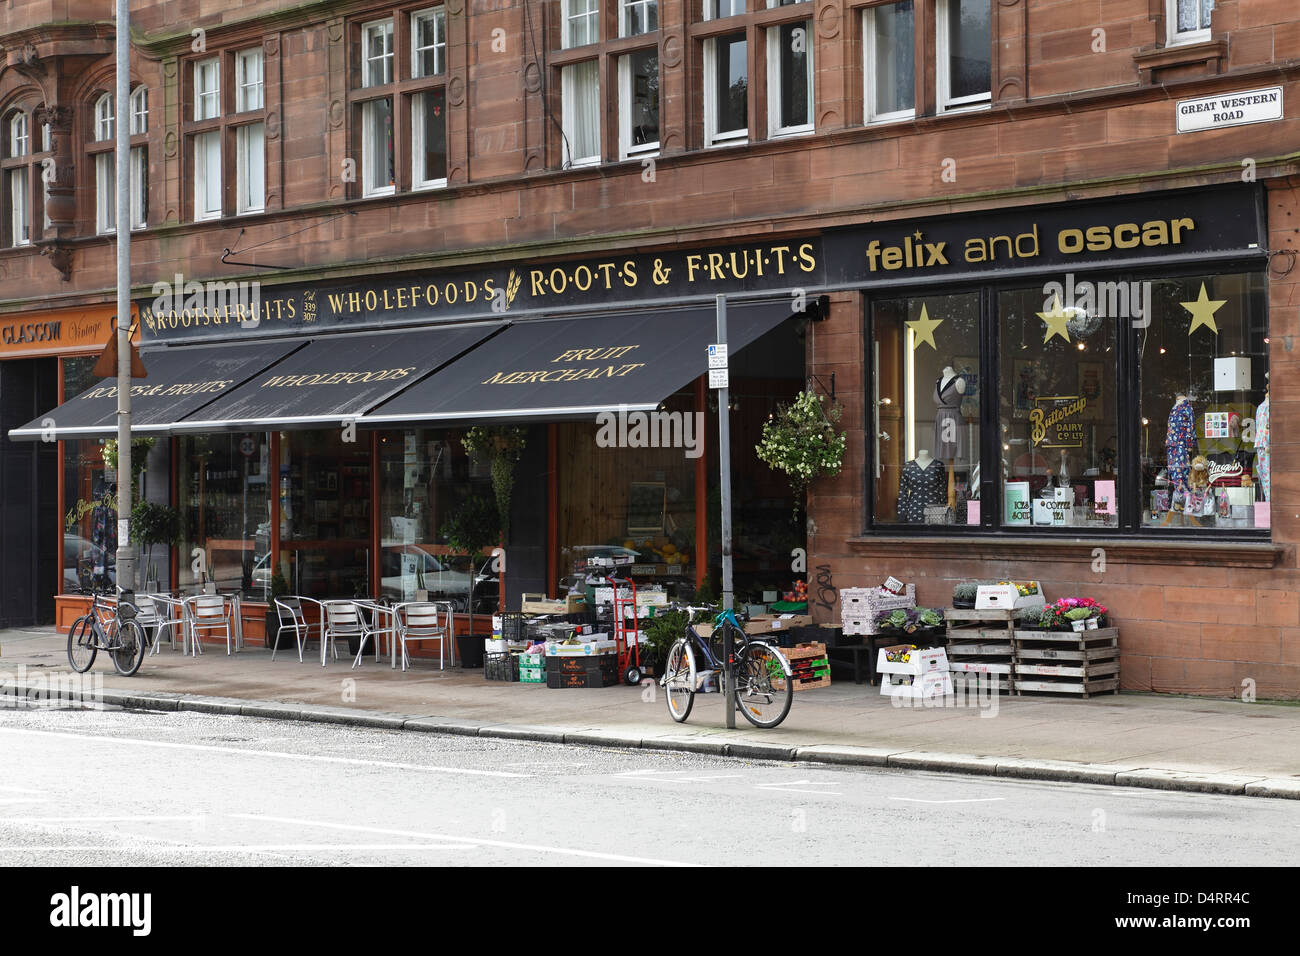 Wurzeln und Früchte Vollwert- und Obst Kaufleute und Felix und Oscar Shop, Great Western Road, West End von Glasgow, Scotland, UK Stockfoto